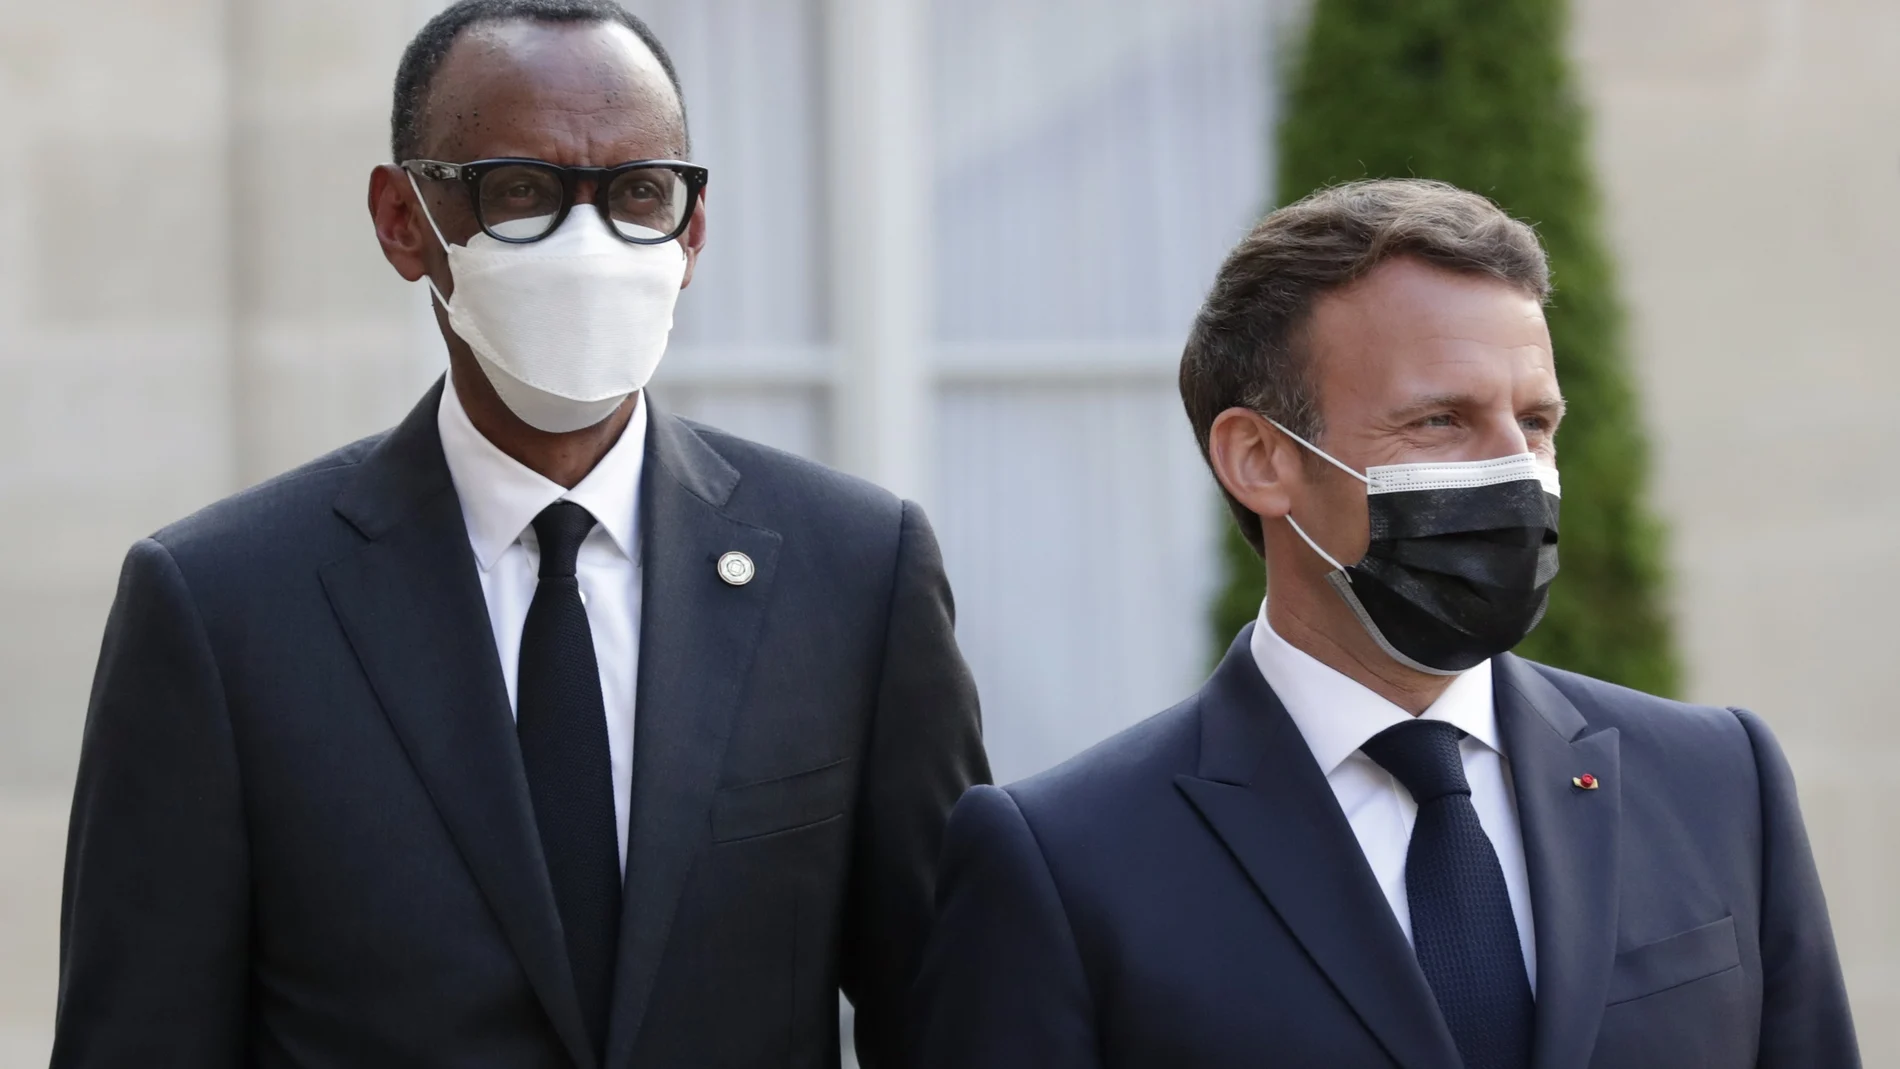 El presidente francés, Emmanuel Macron, a la derecha, recibió al presidente de Ruanda, Paul Kagame, a la izquierda, para una cena con líderes de los estados africanos, en el Palacio del Elíseo, en París, el lunes 17 de mayo de 2021